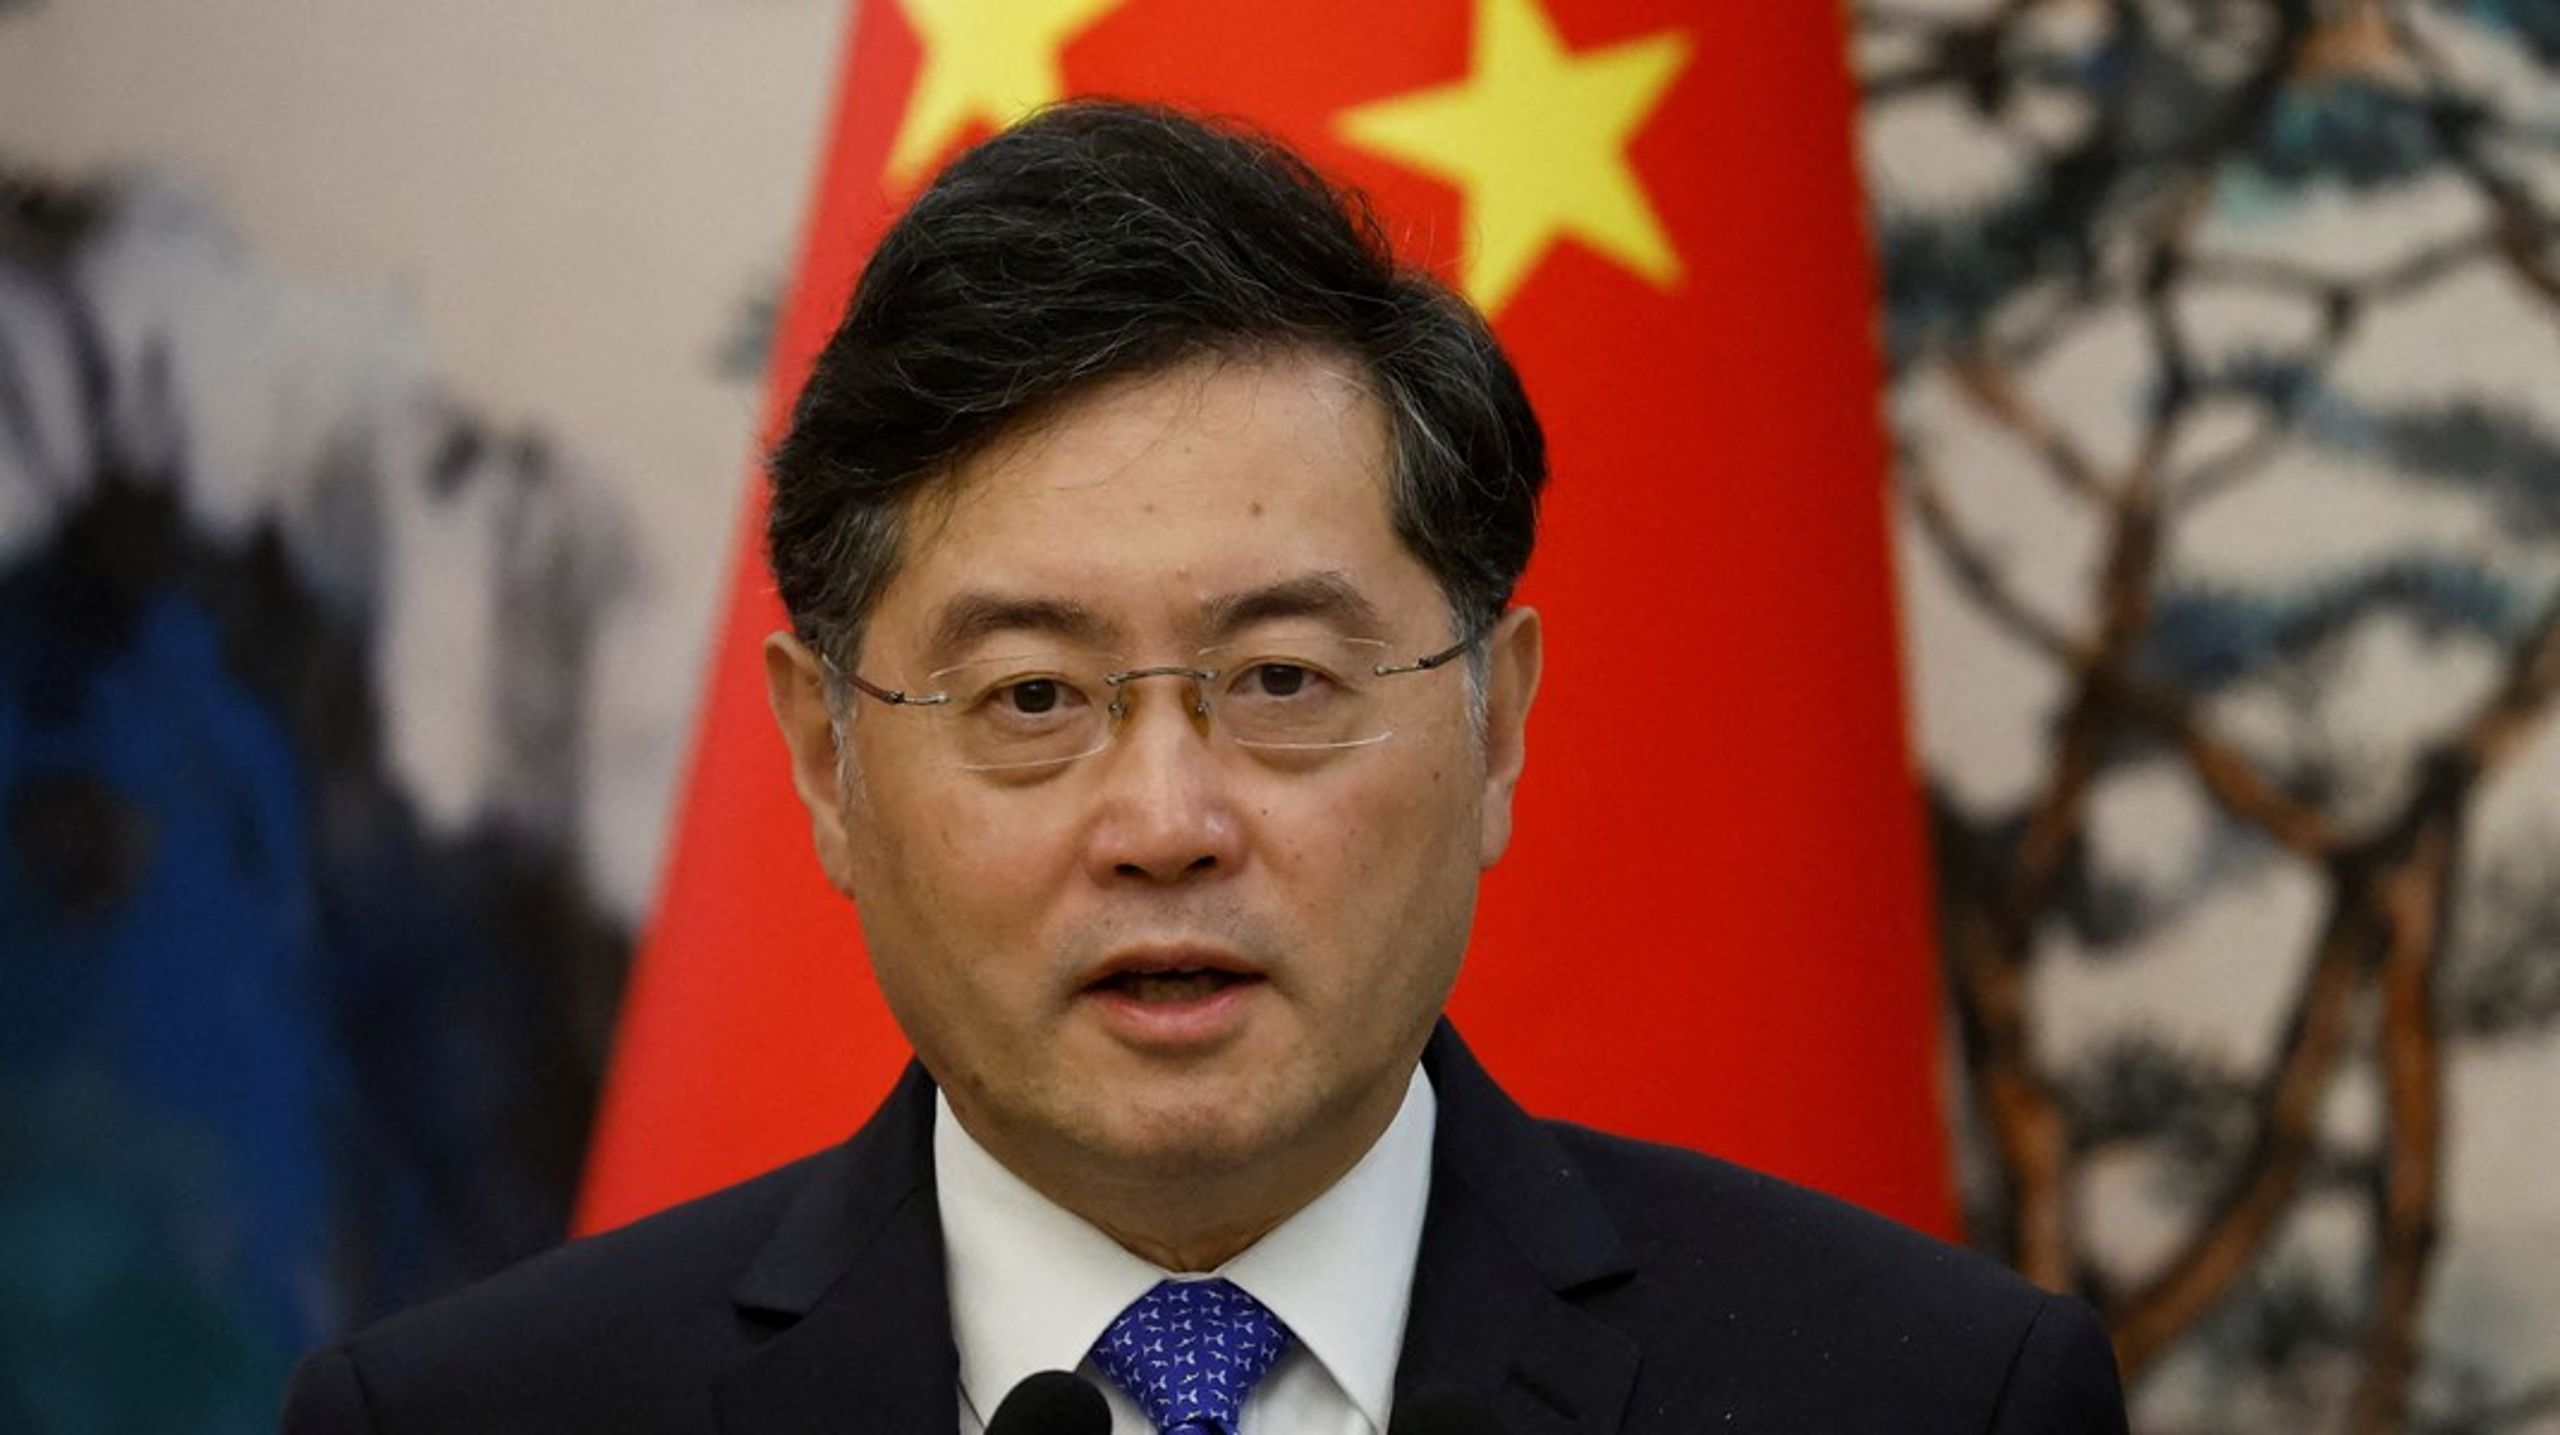 Den kinesiske udenrigsminister Qin Gang er ikke blevet set i offentligheden siden 25. juni. Nu viser det sig, at han er blevet fjernet fra posten.